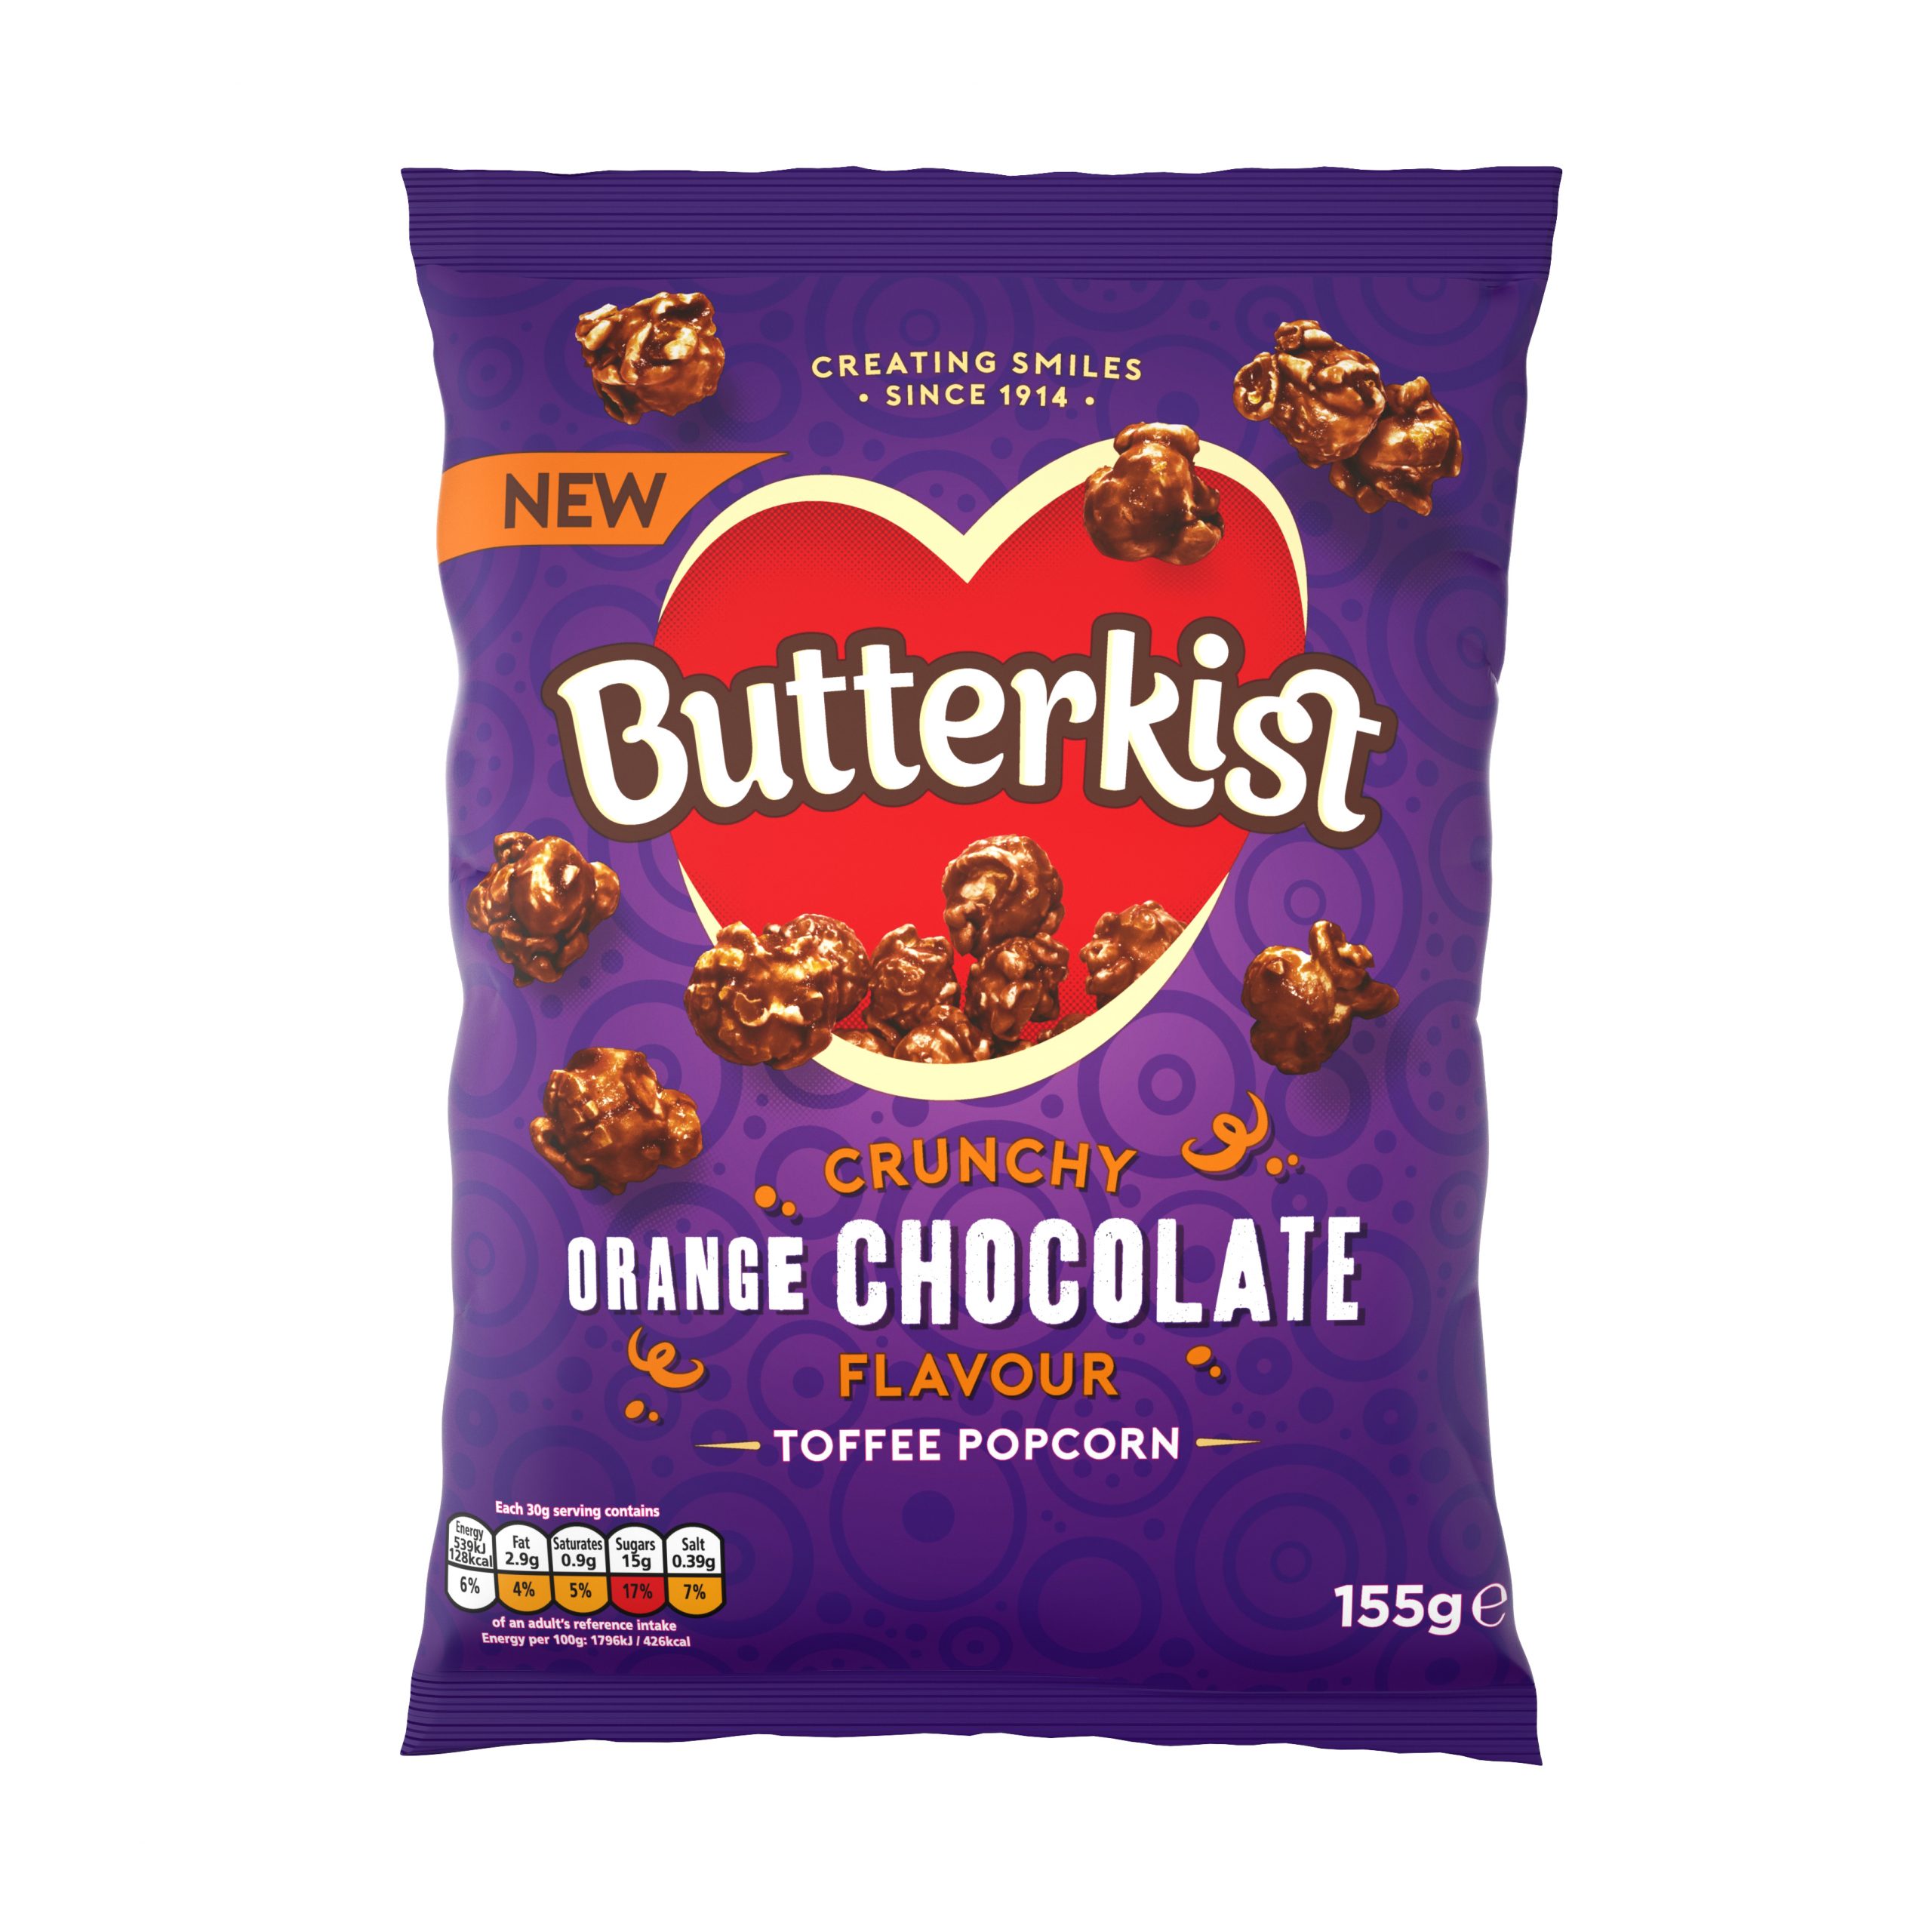 Butterkist popcorn adds new orange chocolate flavour